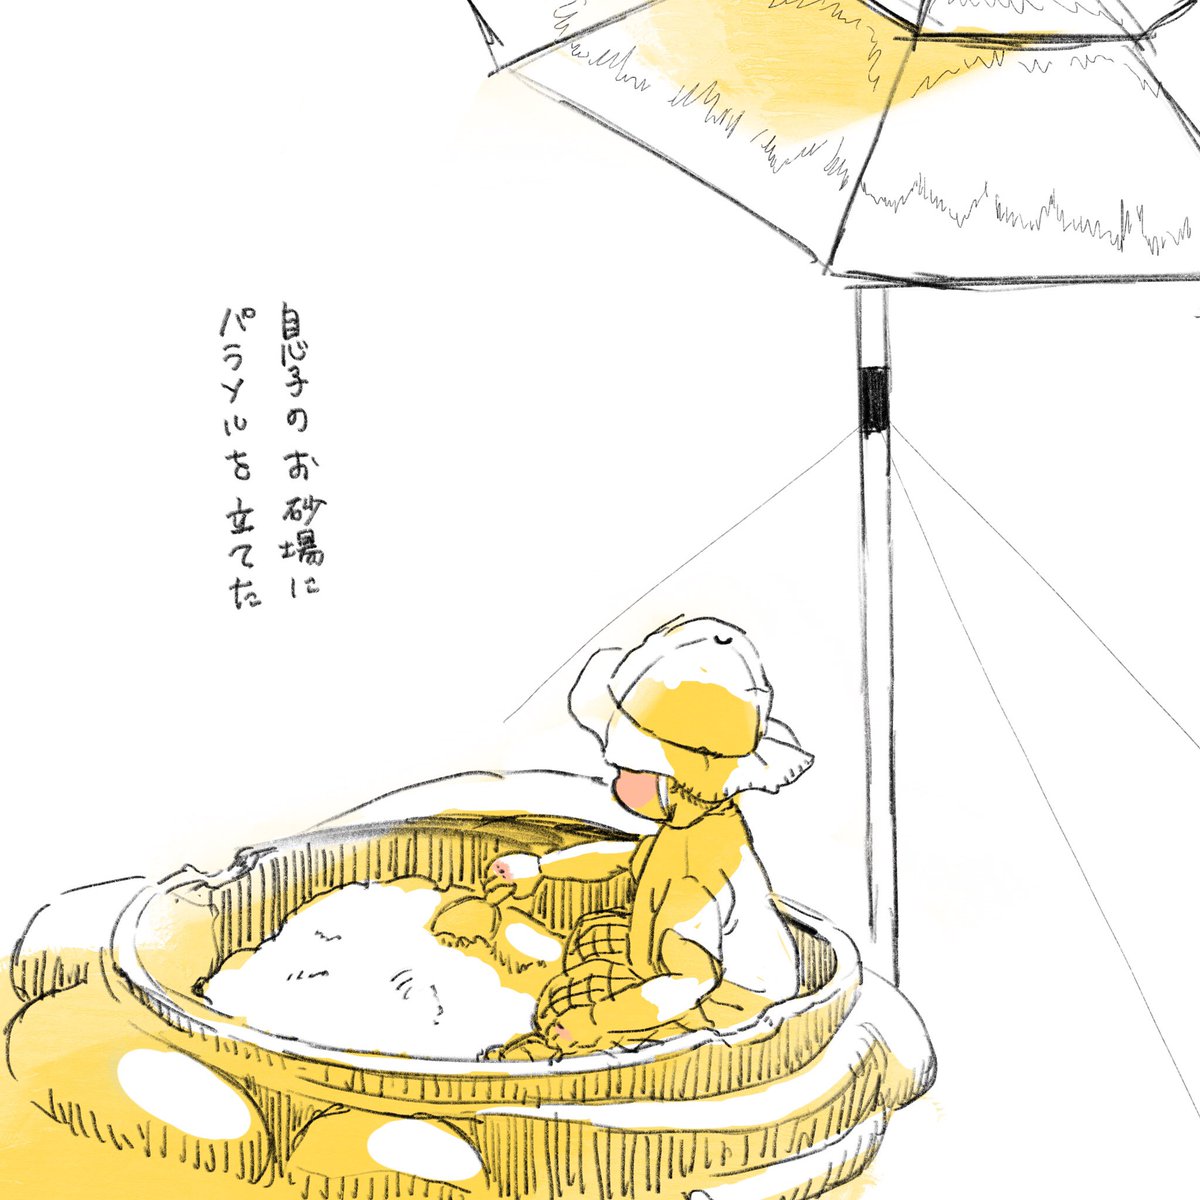 息子とお砂場と傘のおはなし

#2017dec_baby #育児絵日記 #育児漫画 